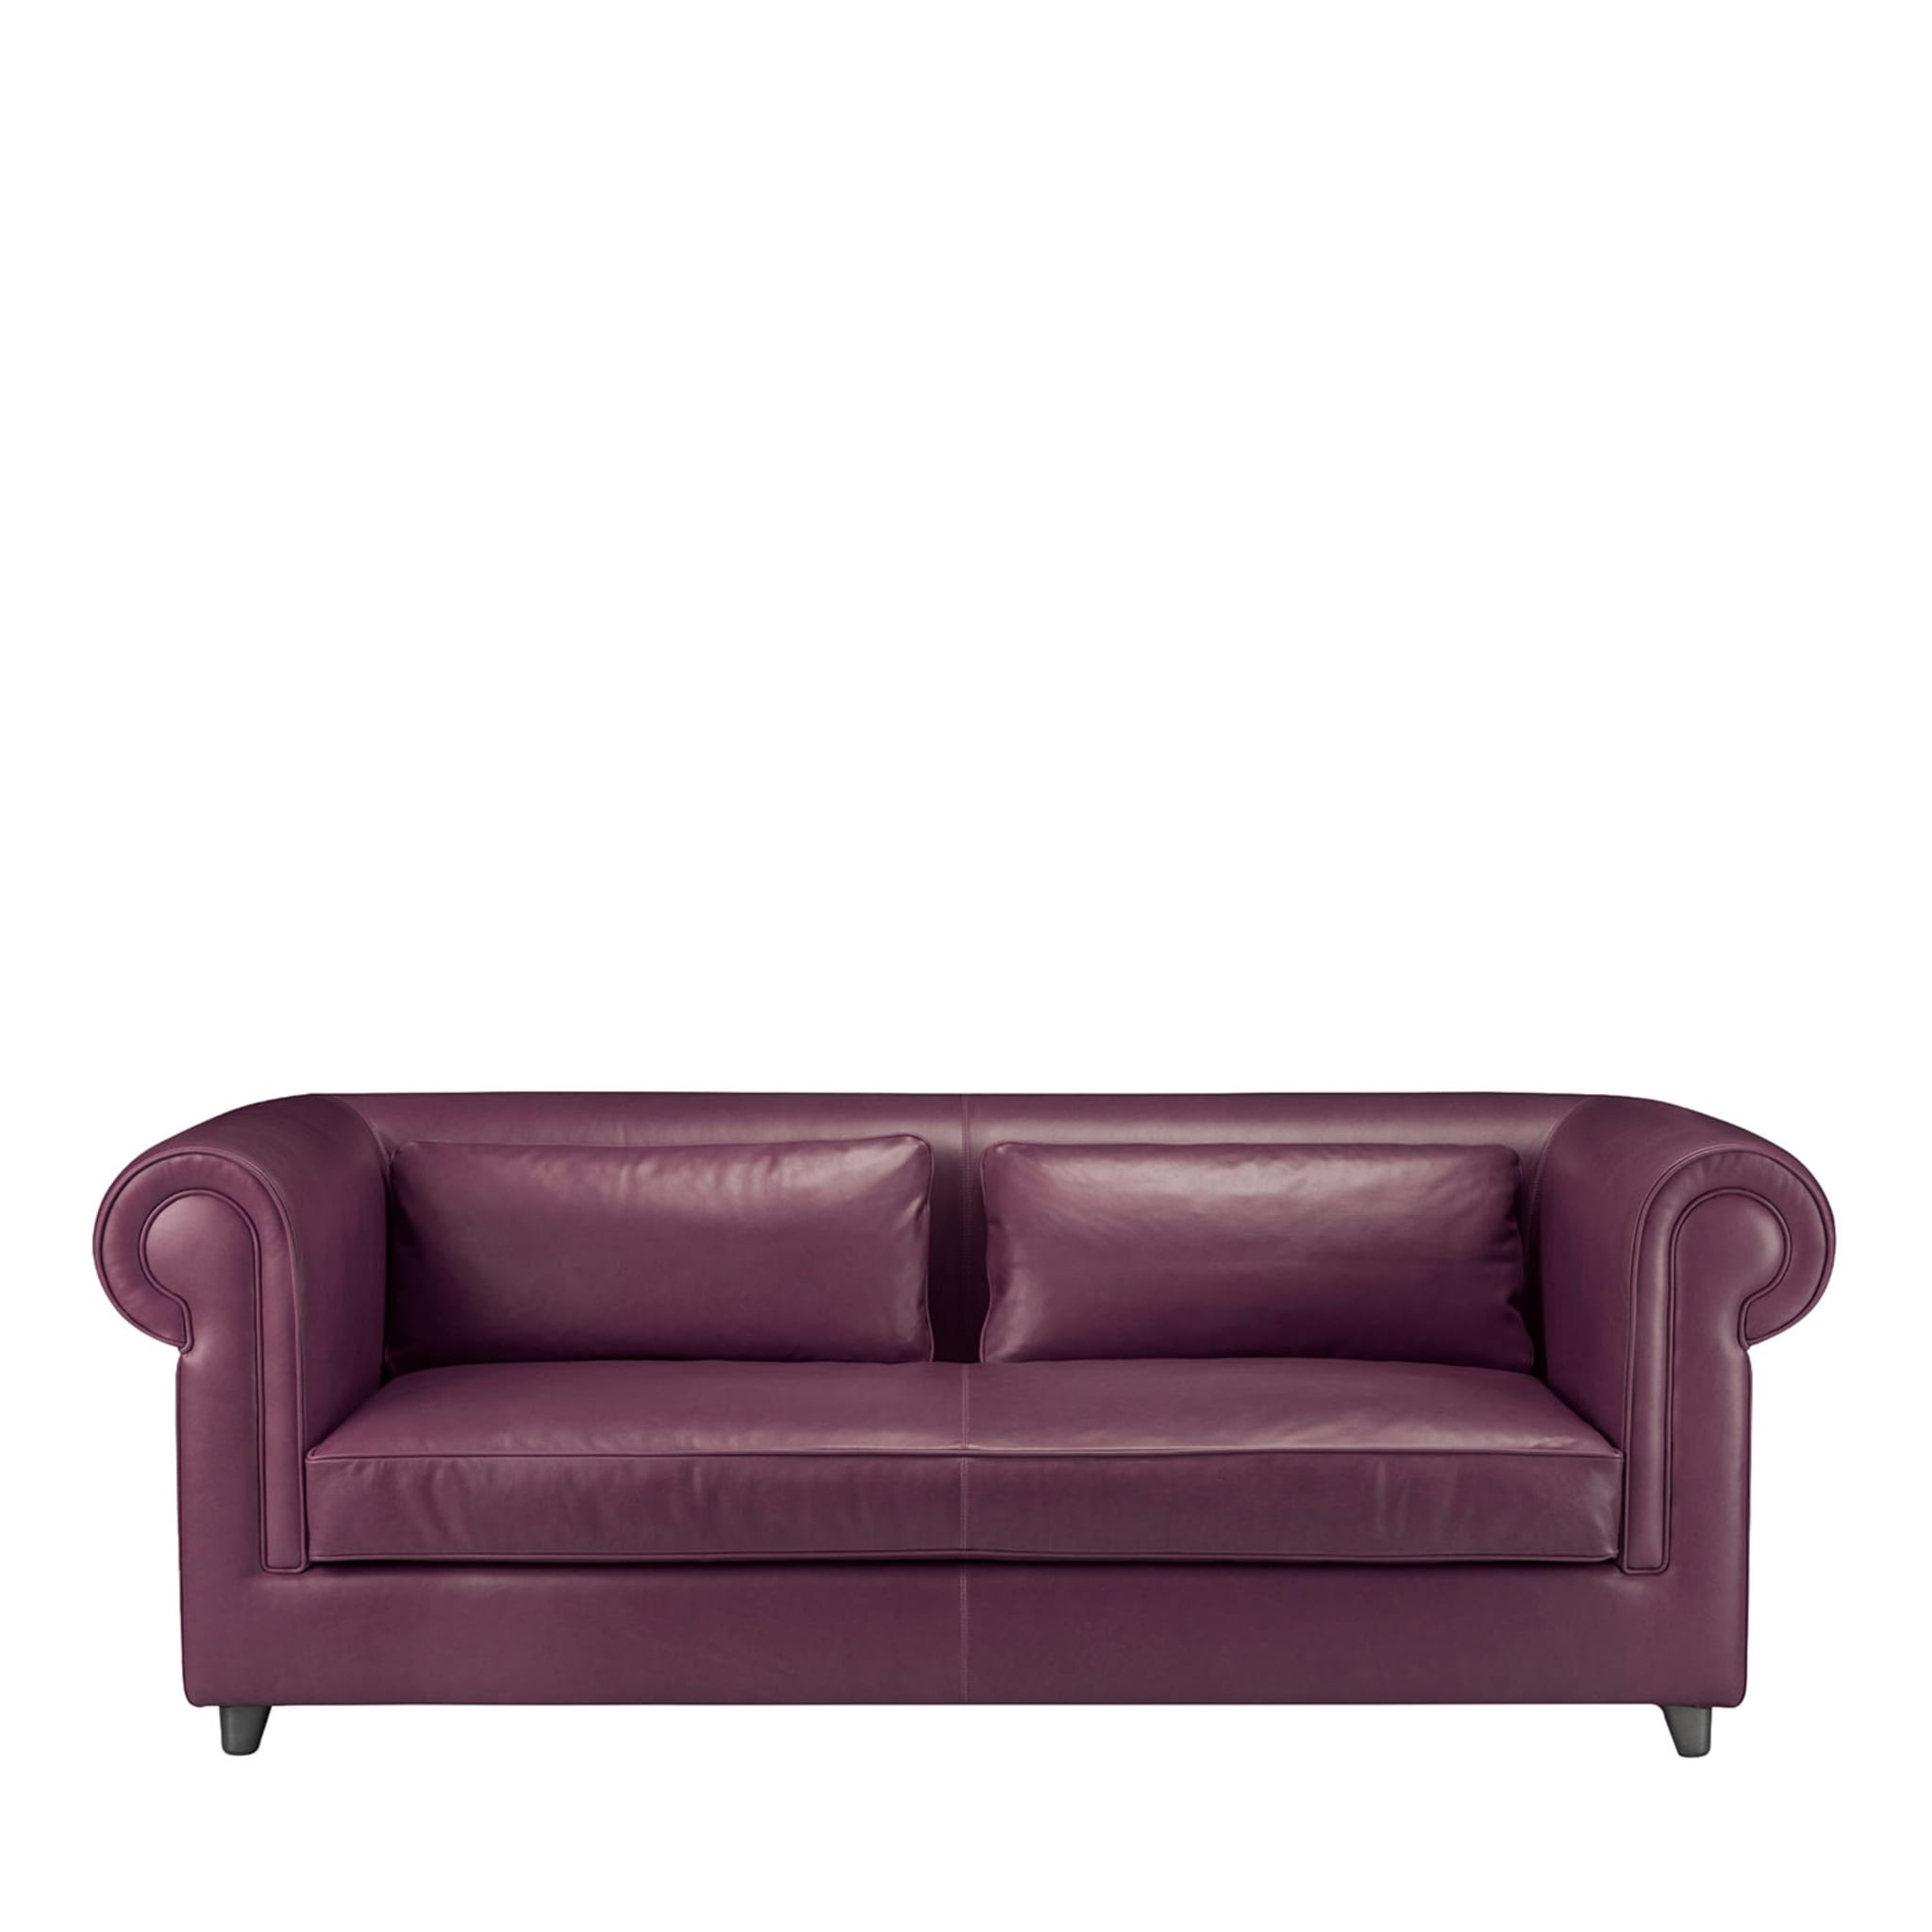 Portofino 2-Seater Purple Sofa by Stefano Giovannoni - Main view